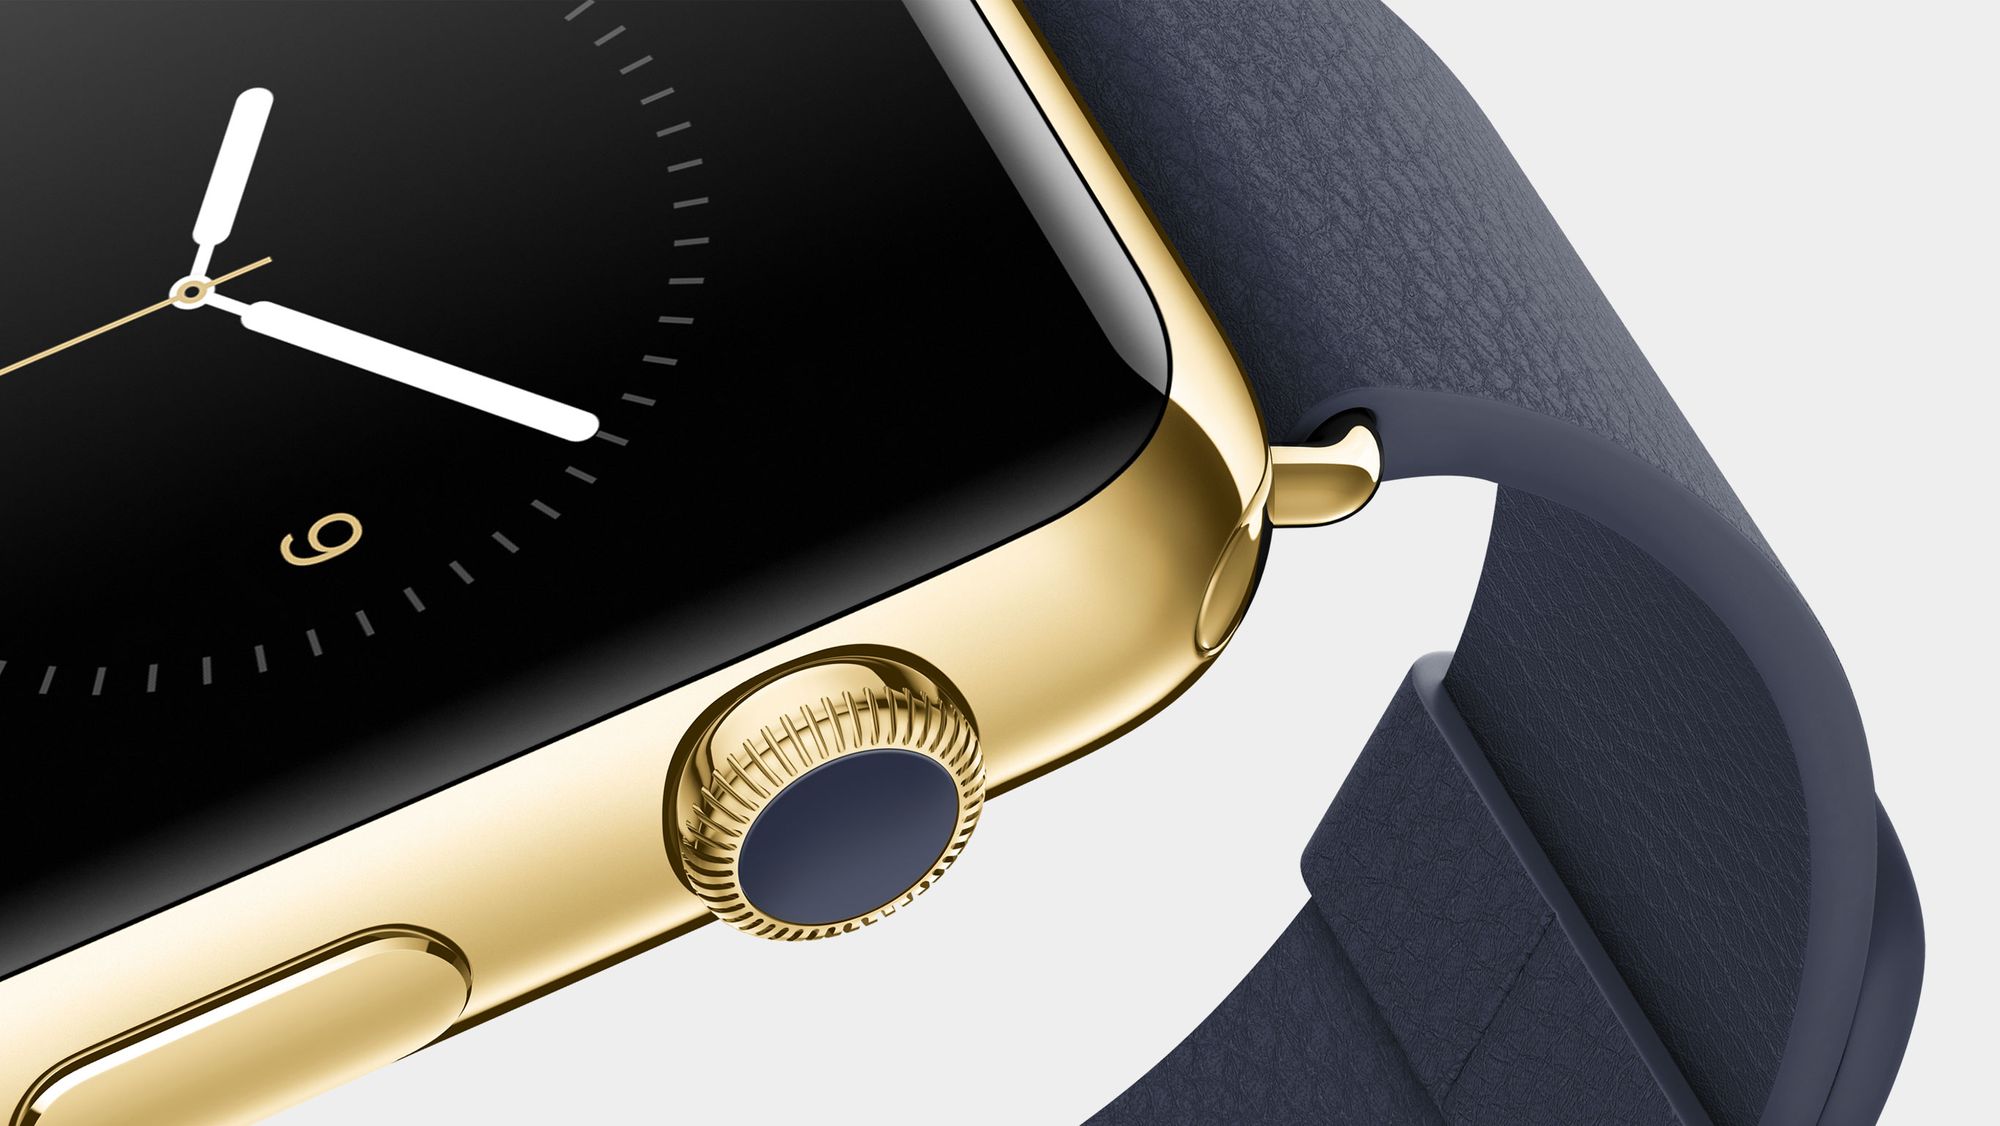 Разработка Apple Watch 2 началась, анонс в 2016 году